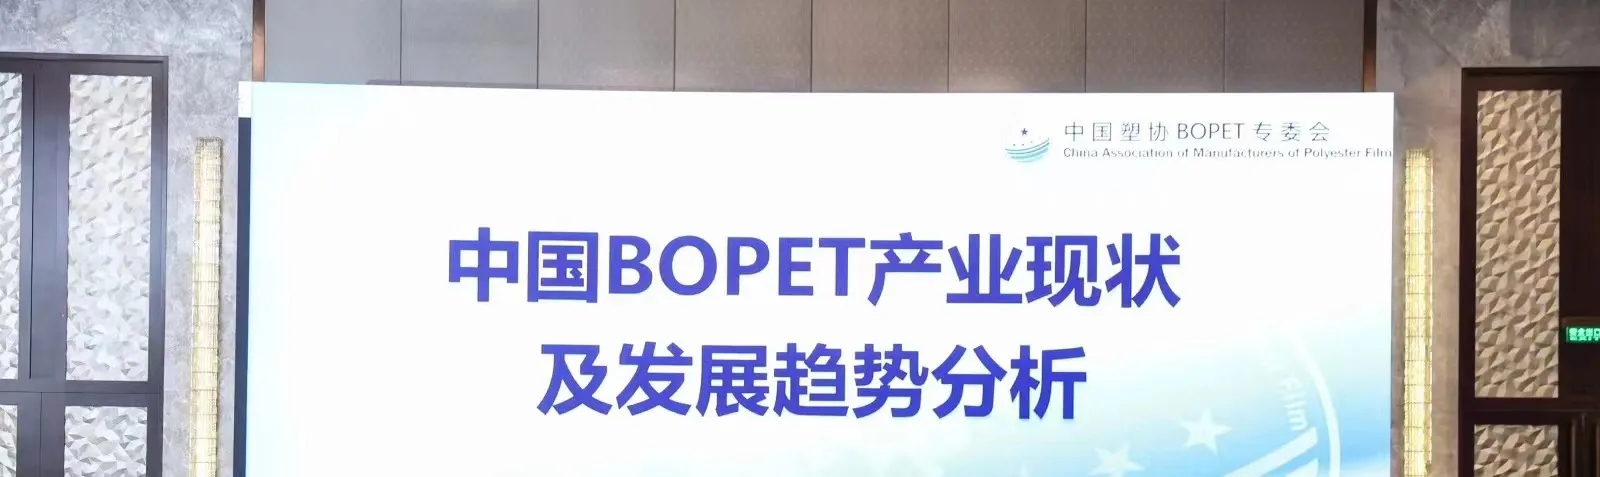 Konferencia a kínai BOPET-ipar jelenlegi helyzetéről és fejlődési trendjéről